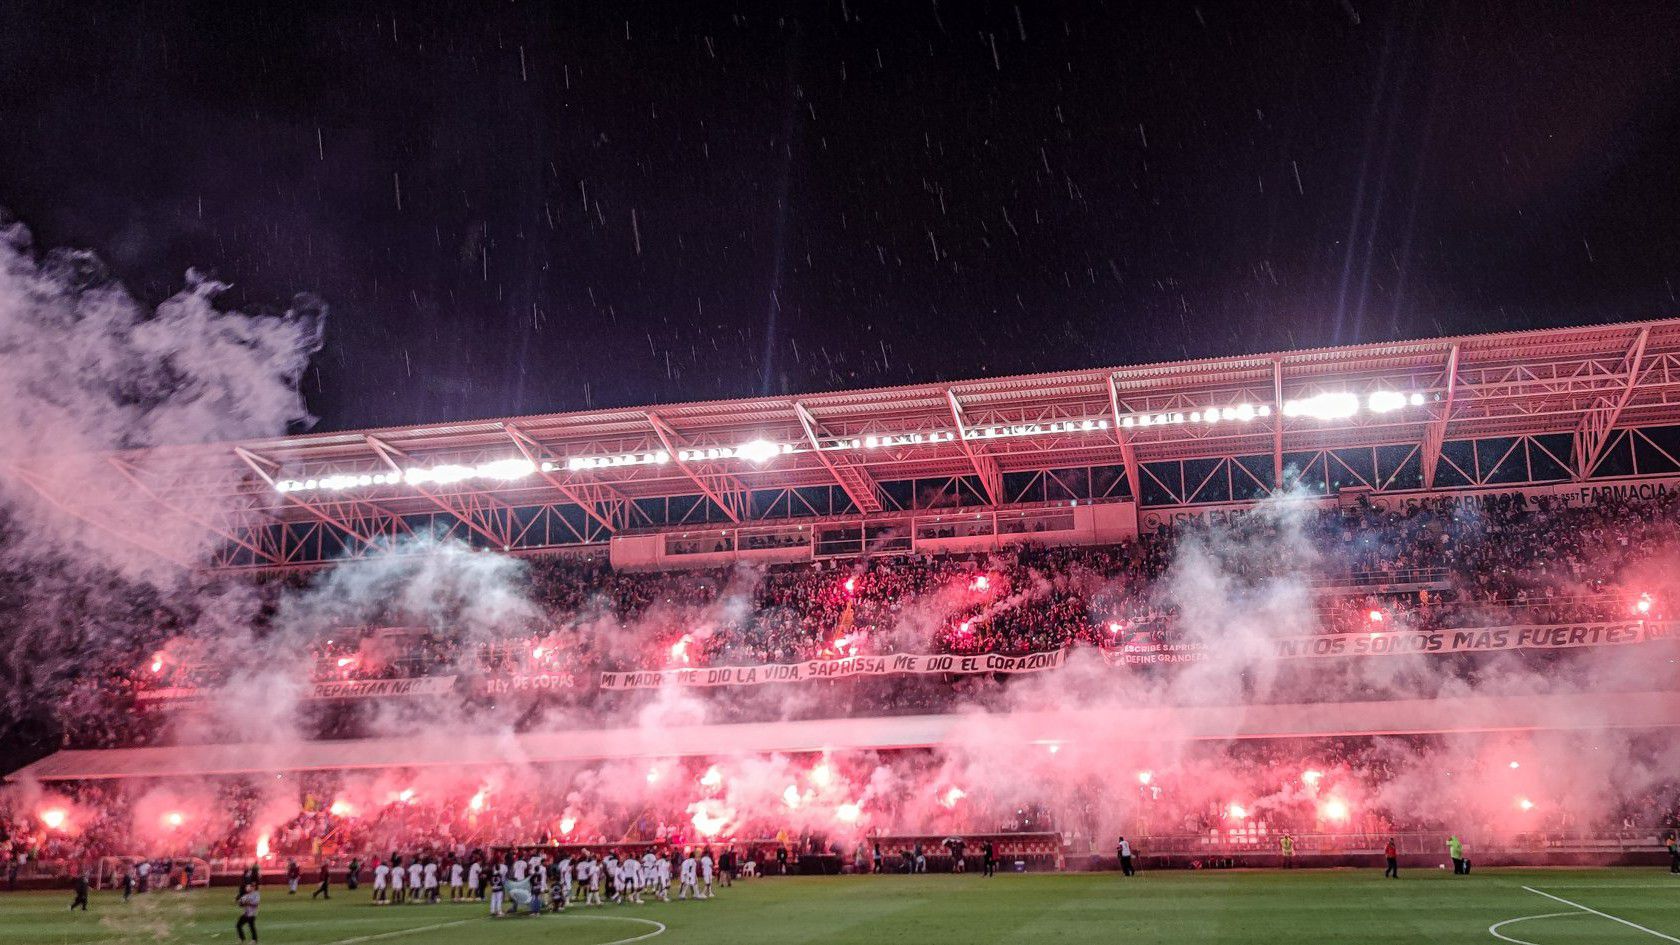 Ilyen volt a hangulat az Estadio Ricardo Saprissa Aymában a bajnoki elődöntő visszavágóján (fotó: Twitter)